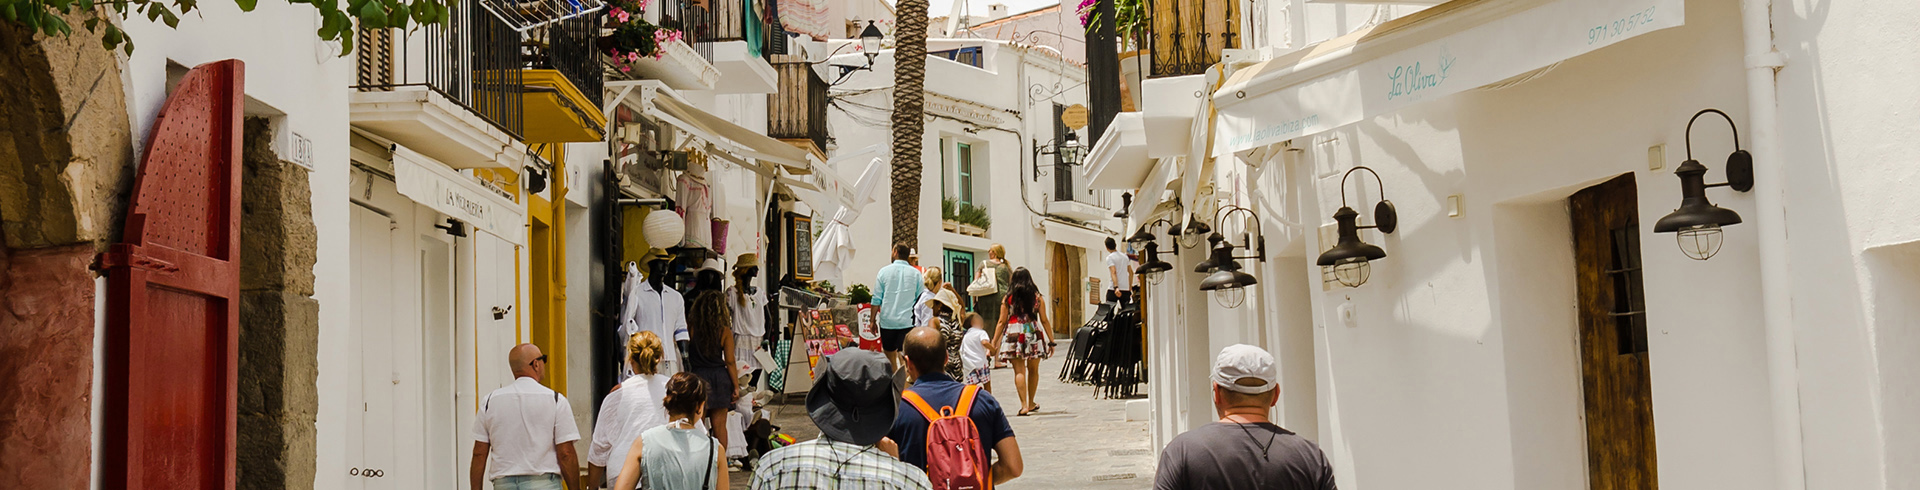 Les rues pittoresques d'Ibiza